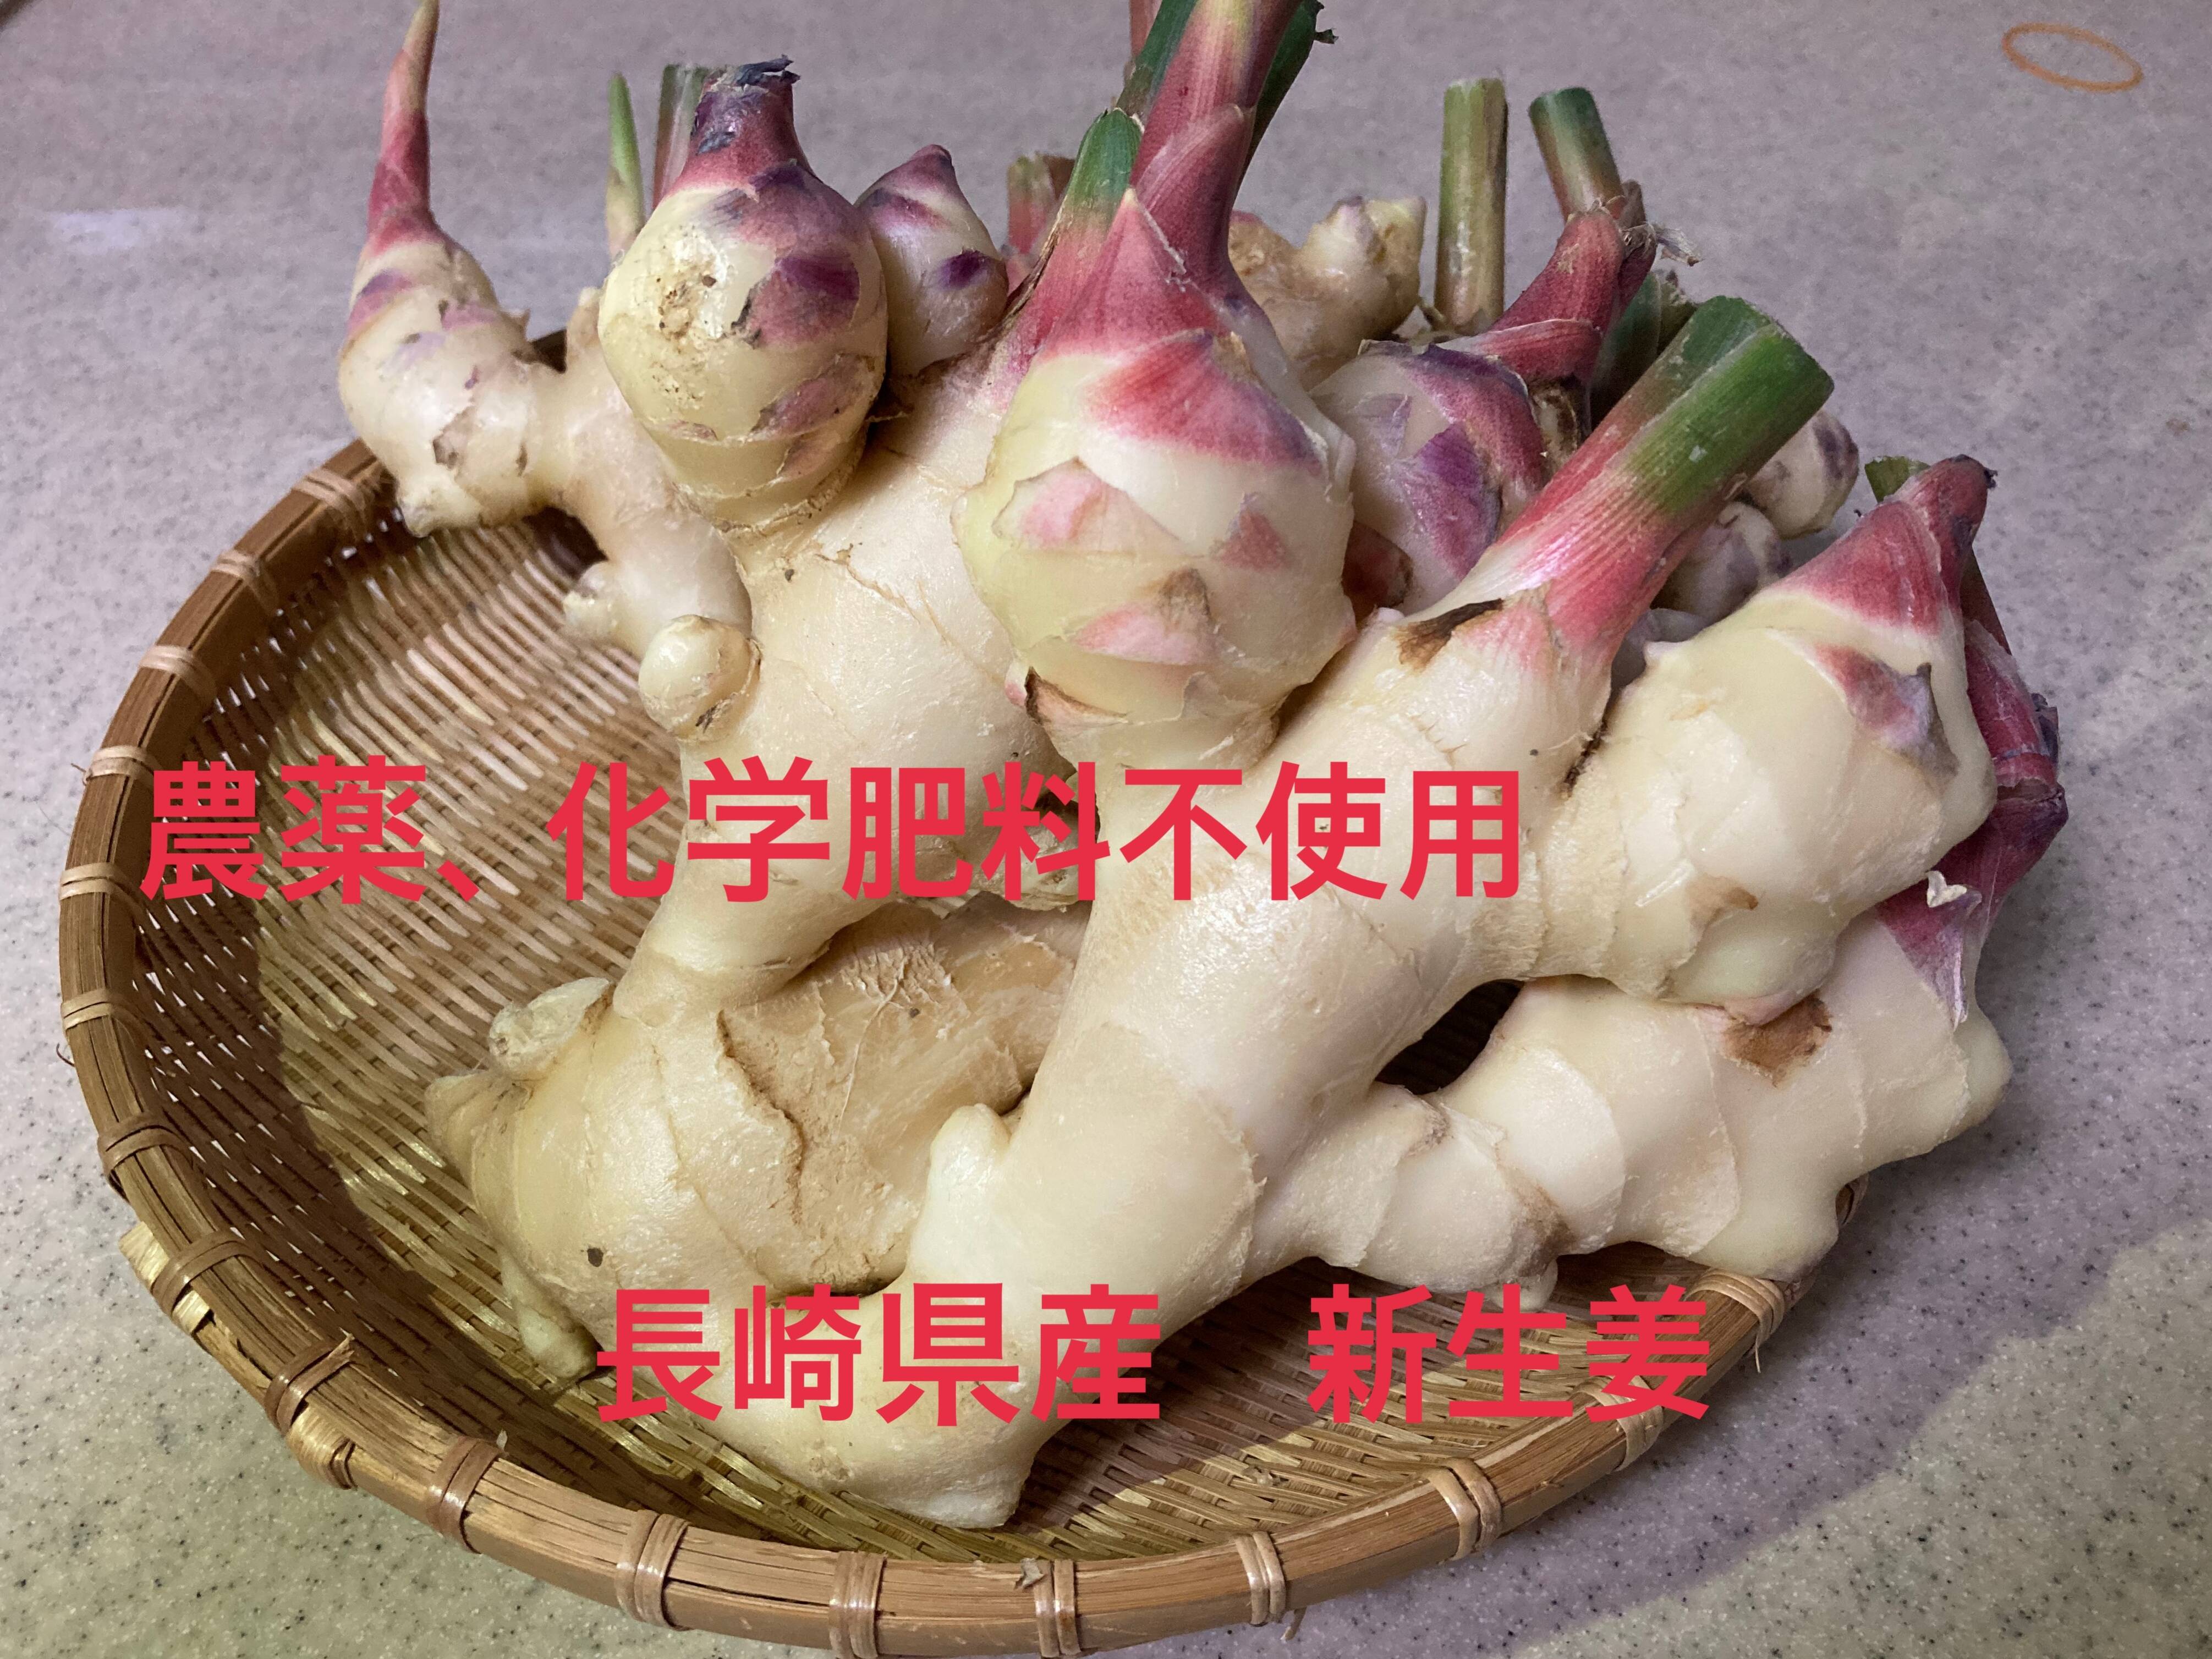 古根生姜 農薬・肥料不使用 露地栽培 熊本県産 5kg